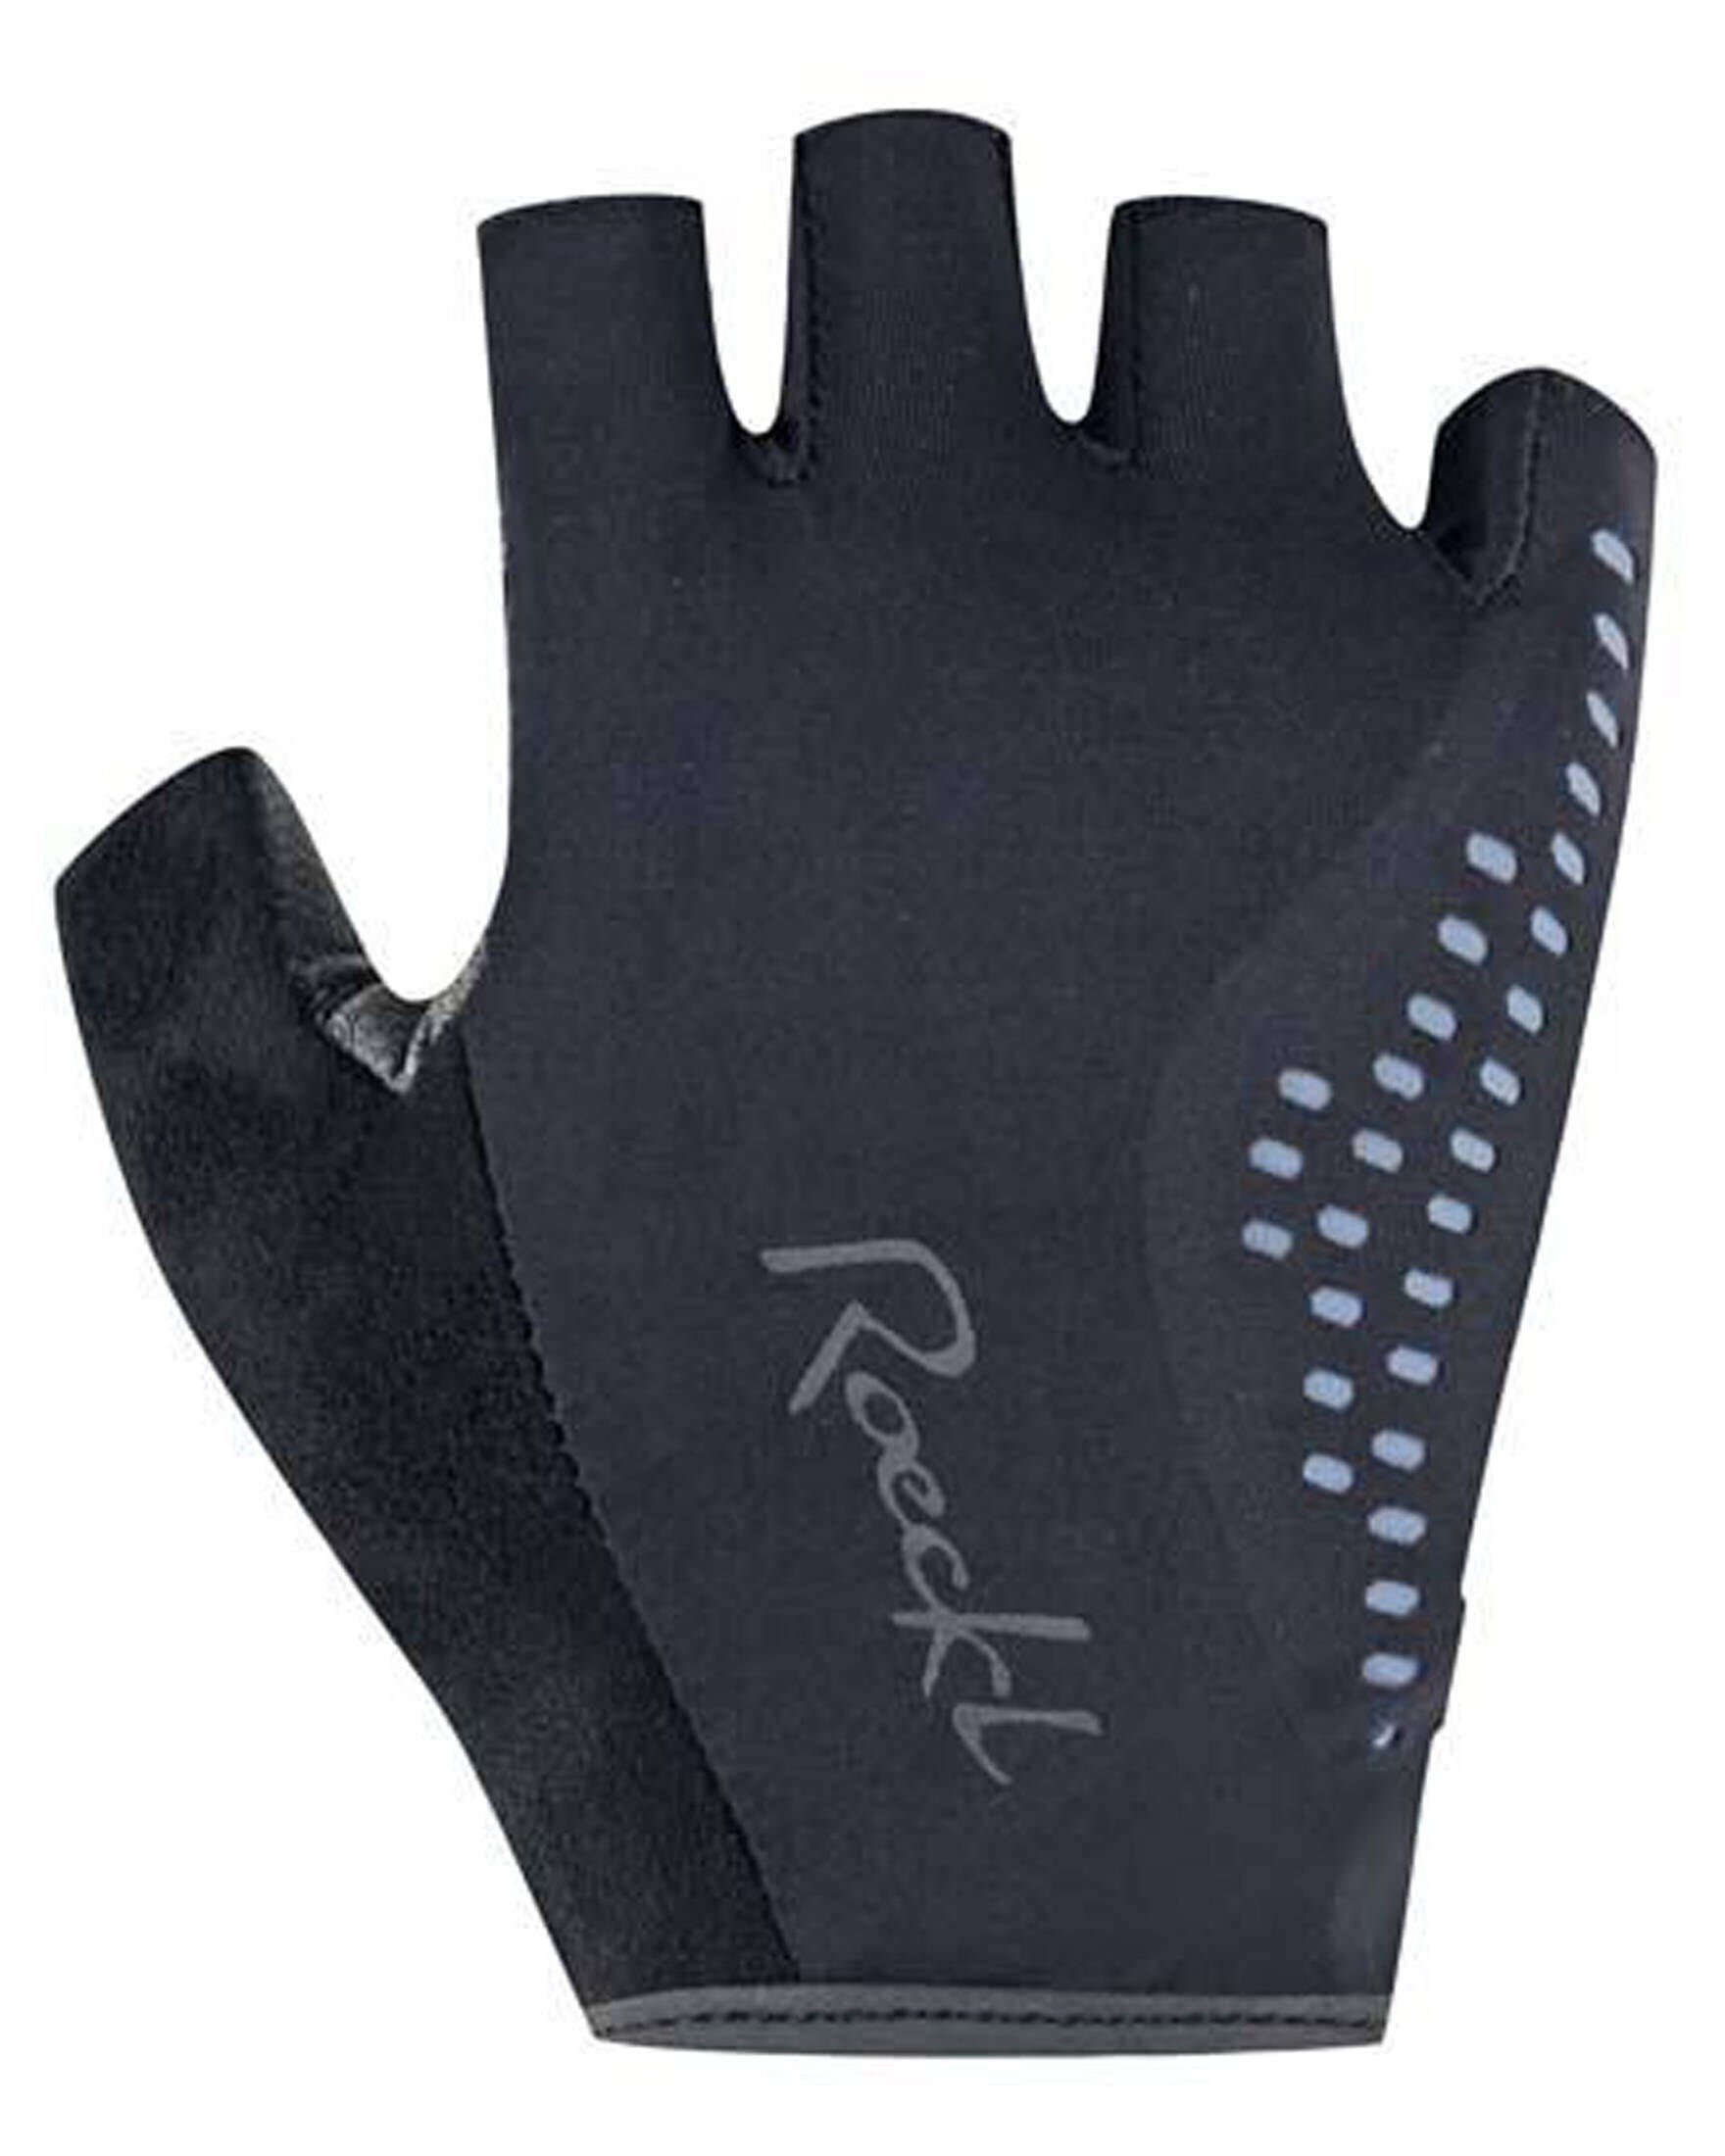 Roeckl SPORTS Fahrradhandschuhe Damen Radsport schwarz DAVILLA (200) Handschuhe